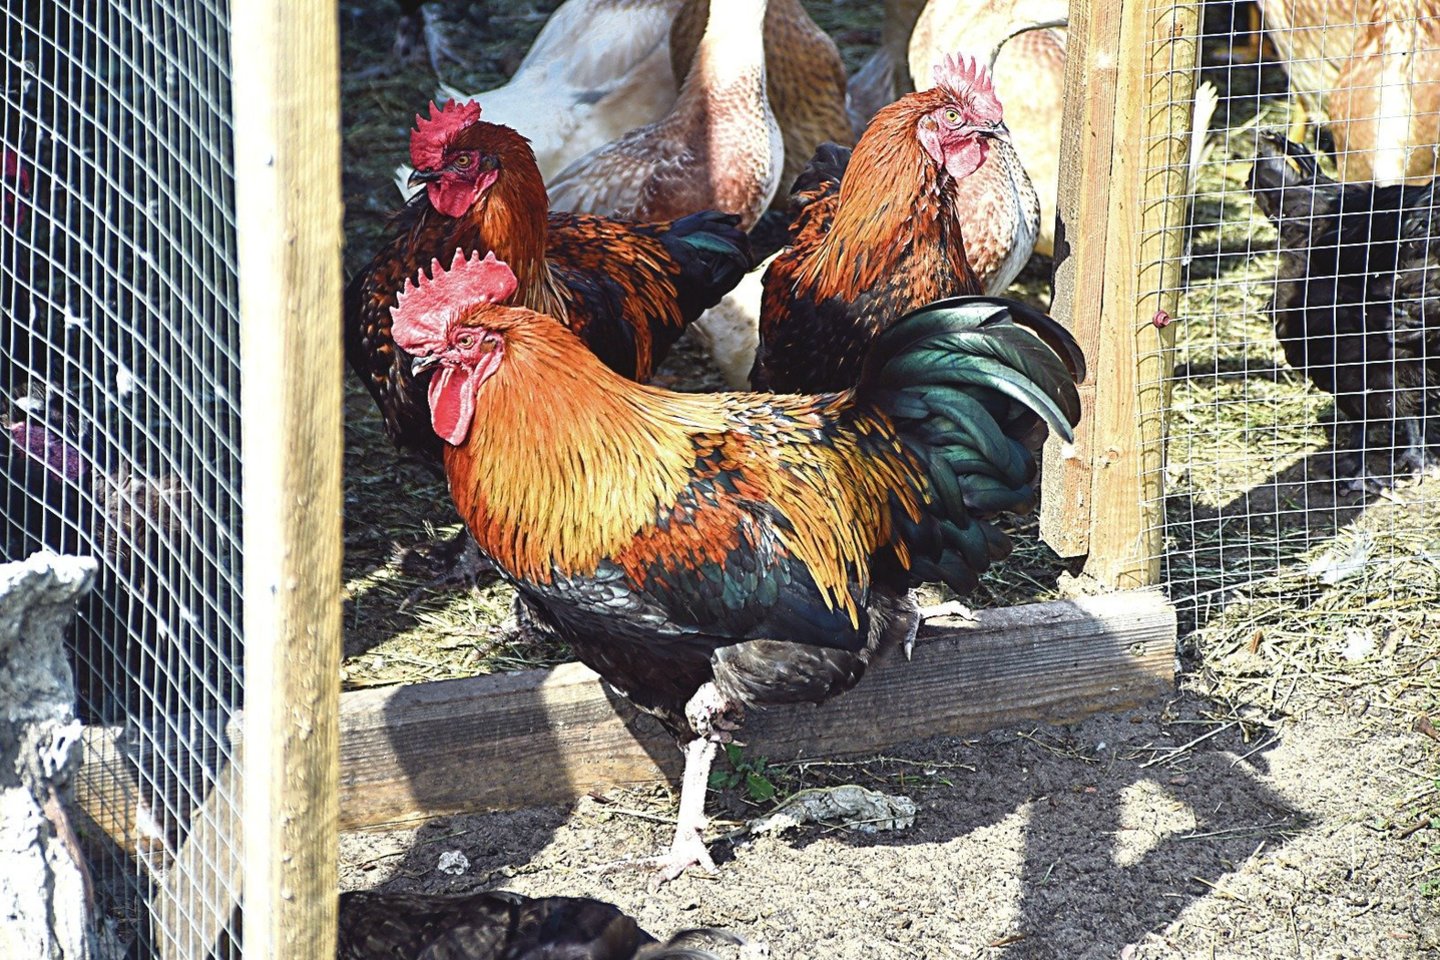 Kiaušinių pramonėje kiekvienais metais perinama milijonai viščiukų, o moteriškos lyties viščiukai parduodami auginimui atskiriems ūkininkams arba komerciniams paukštininkystės ūkiams.<br> lrytas.lt nuotr.